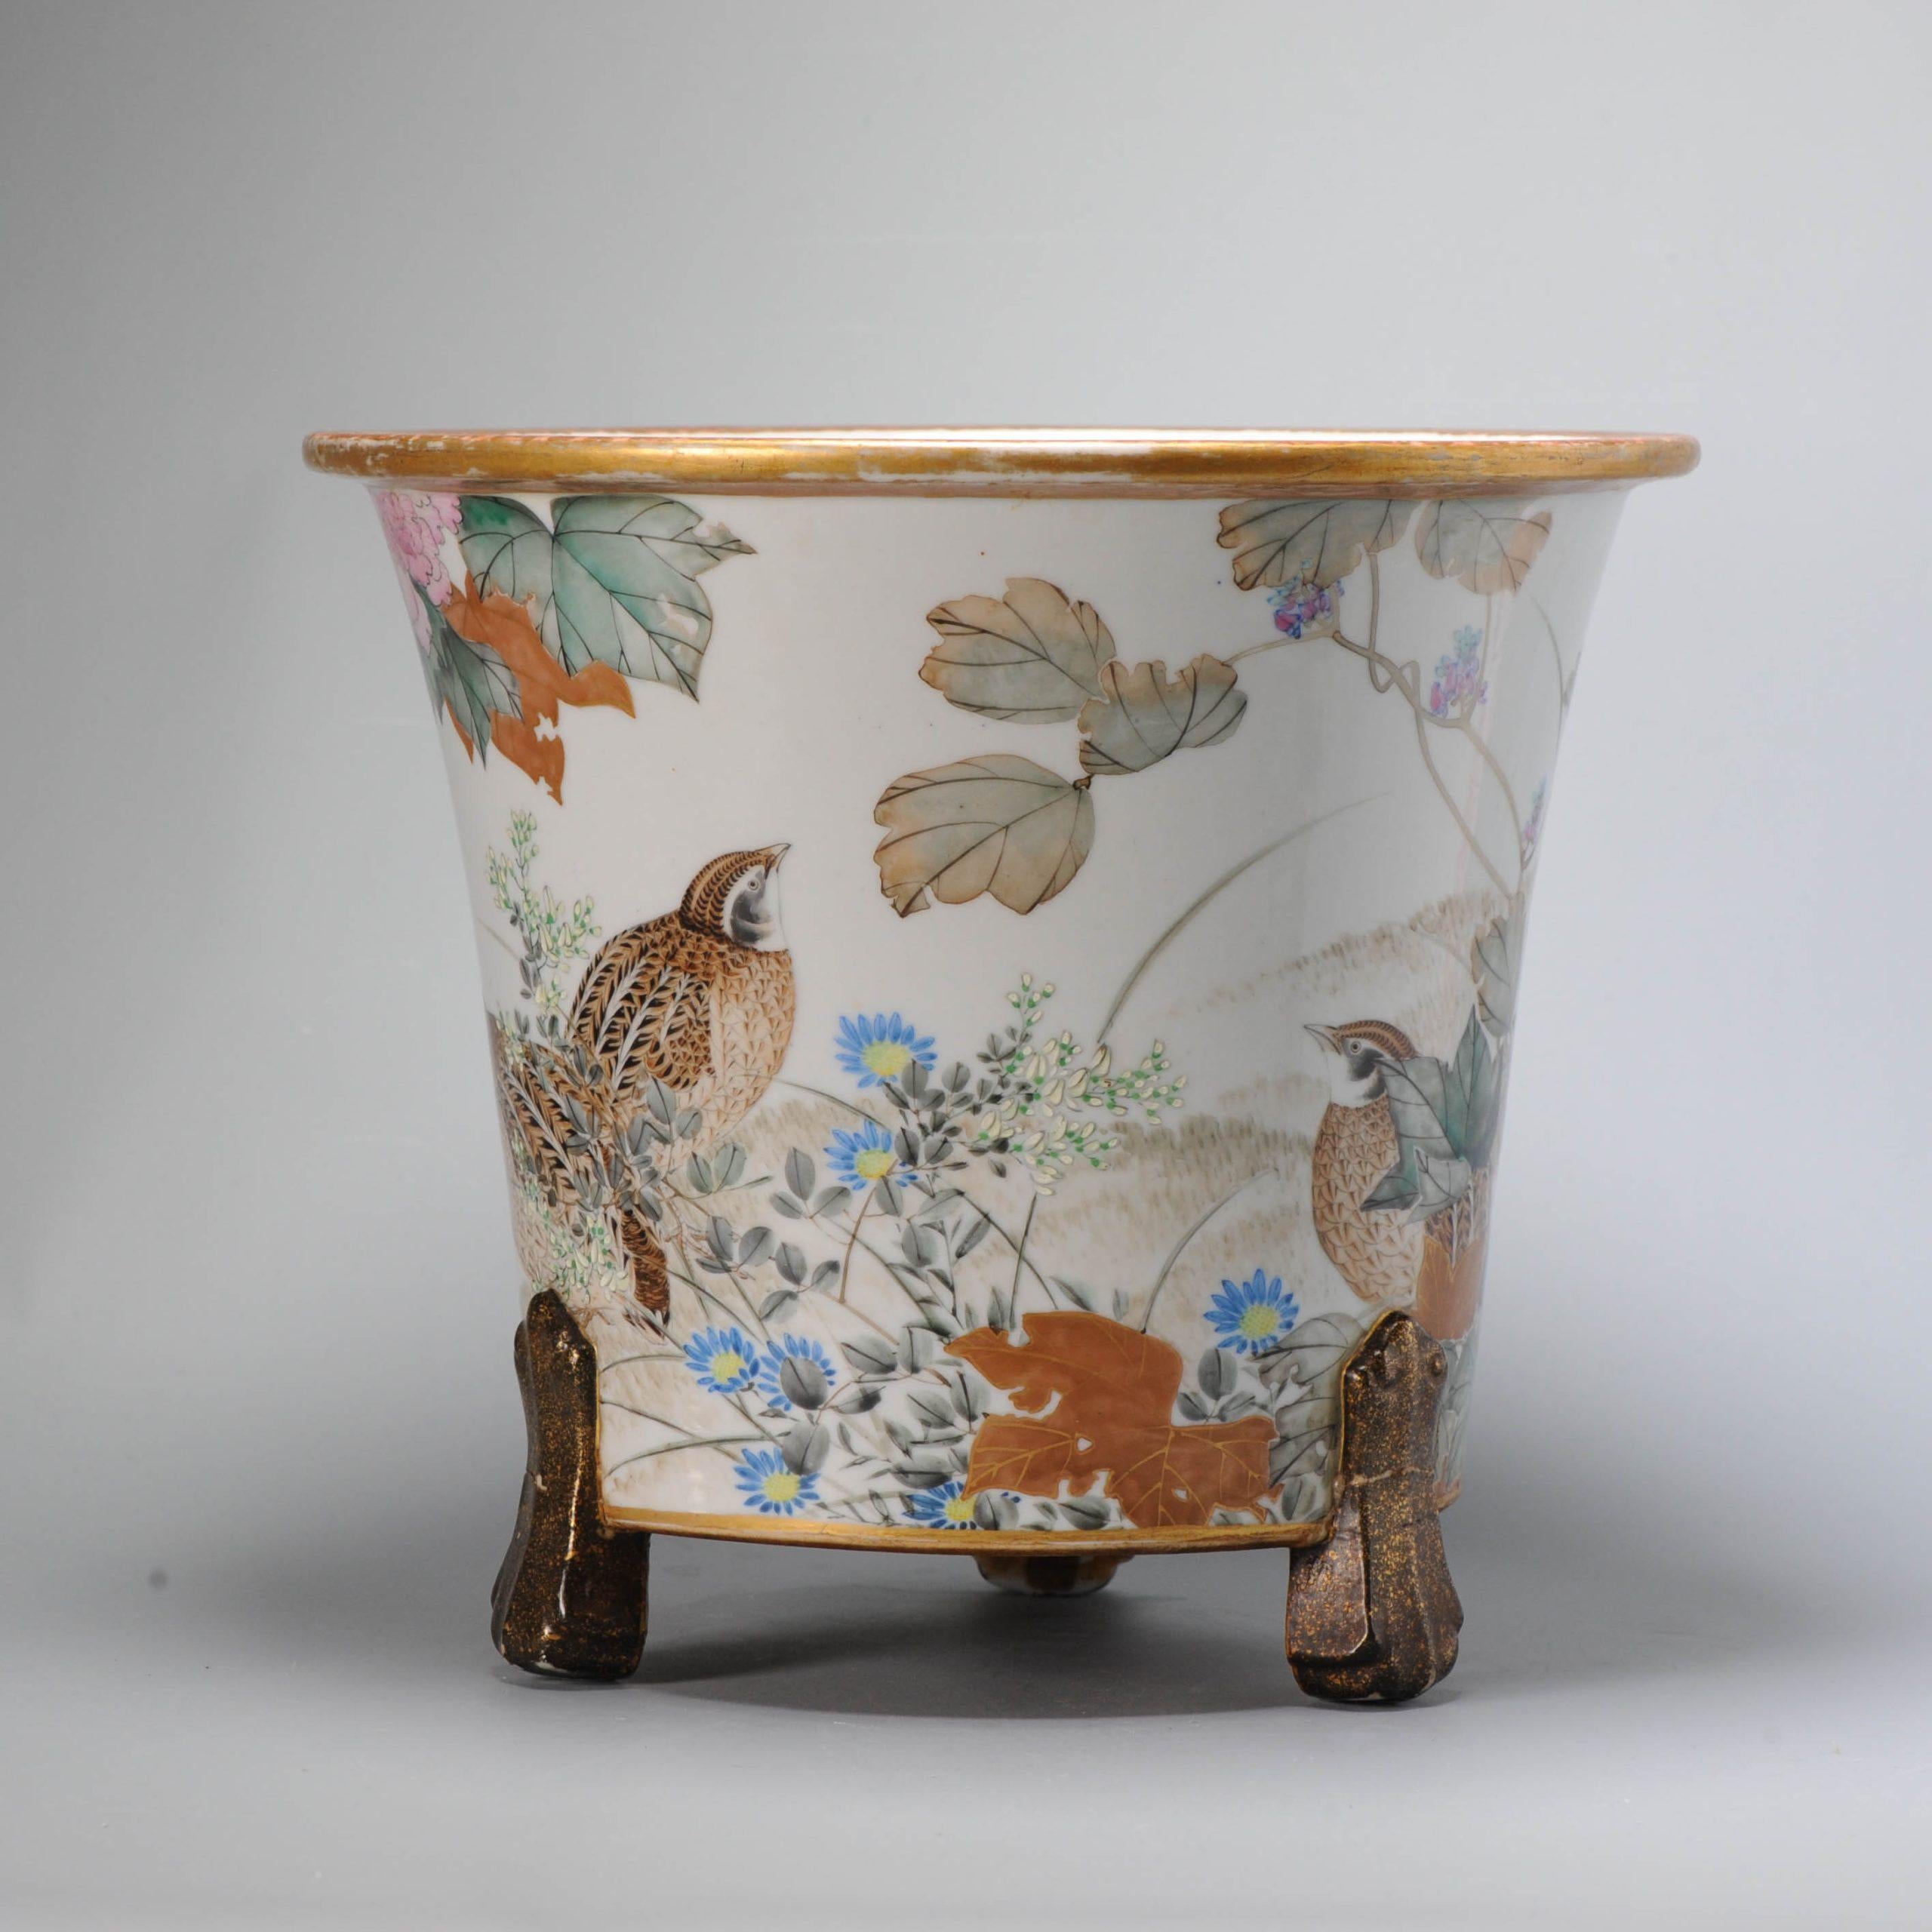 Qing Antique circa 1900 Period Japanese Porcelain Jardiniere Japan Quails Flowers For Sale